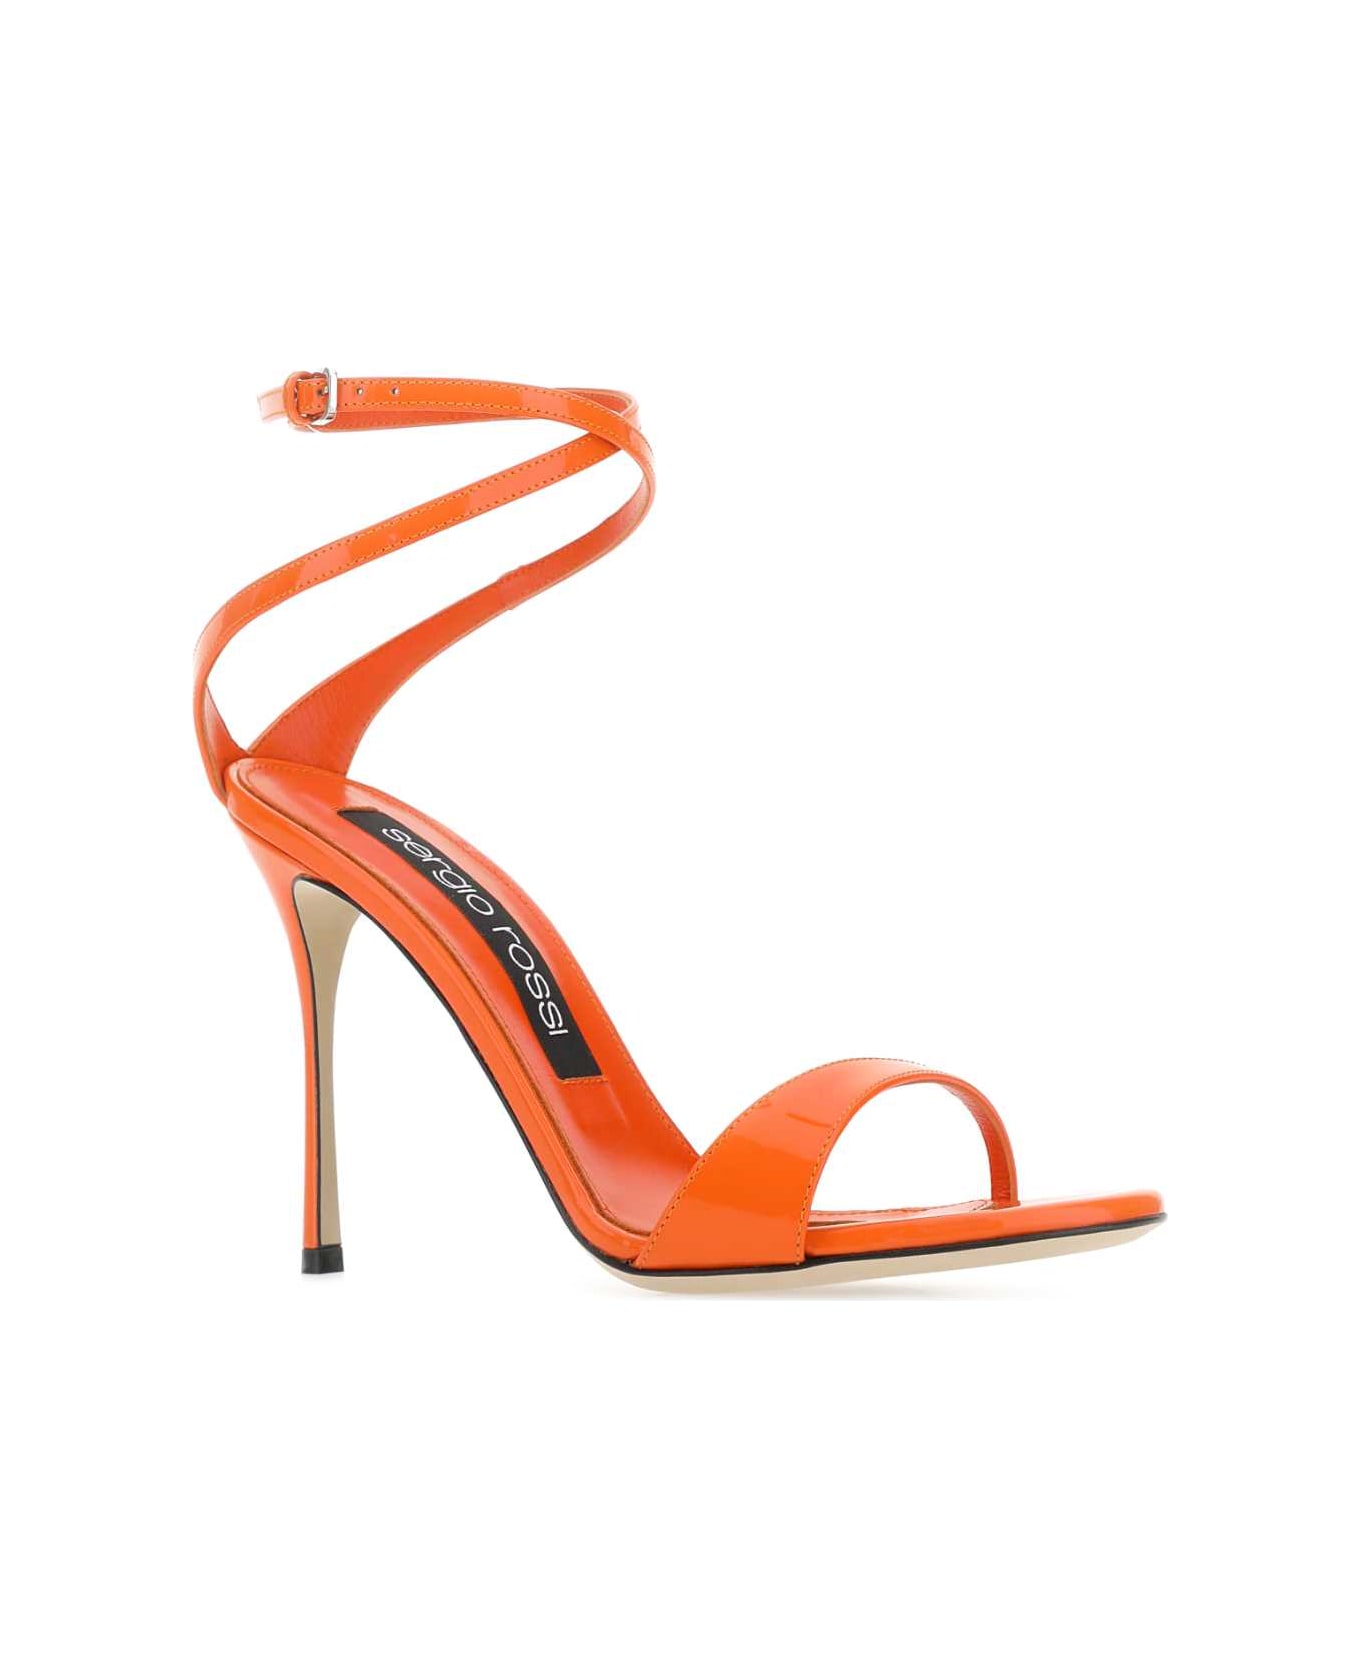 Sergio Rossi Orange Leather Godiva Sandals - Orange サンダル